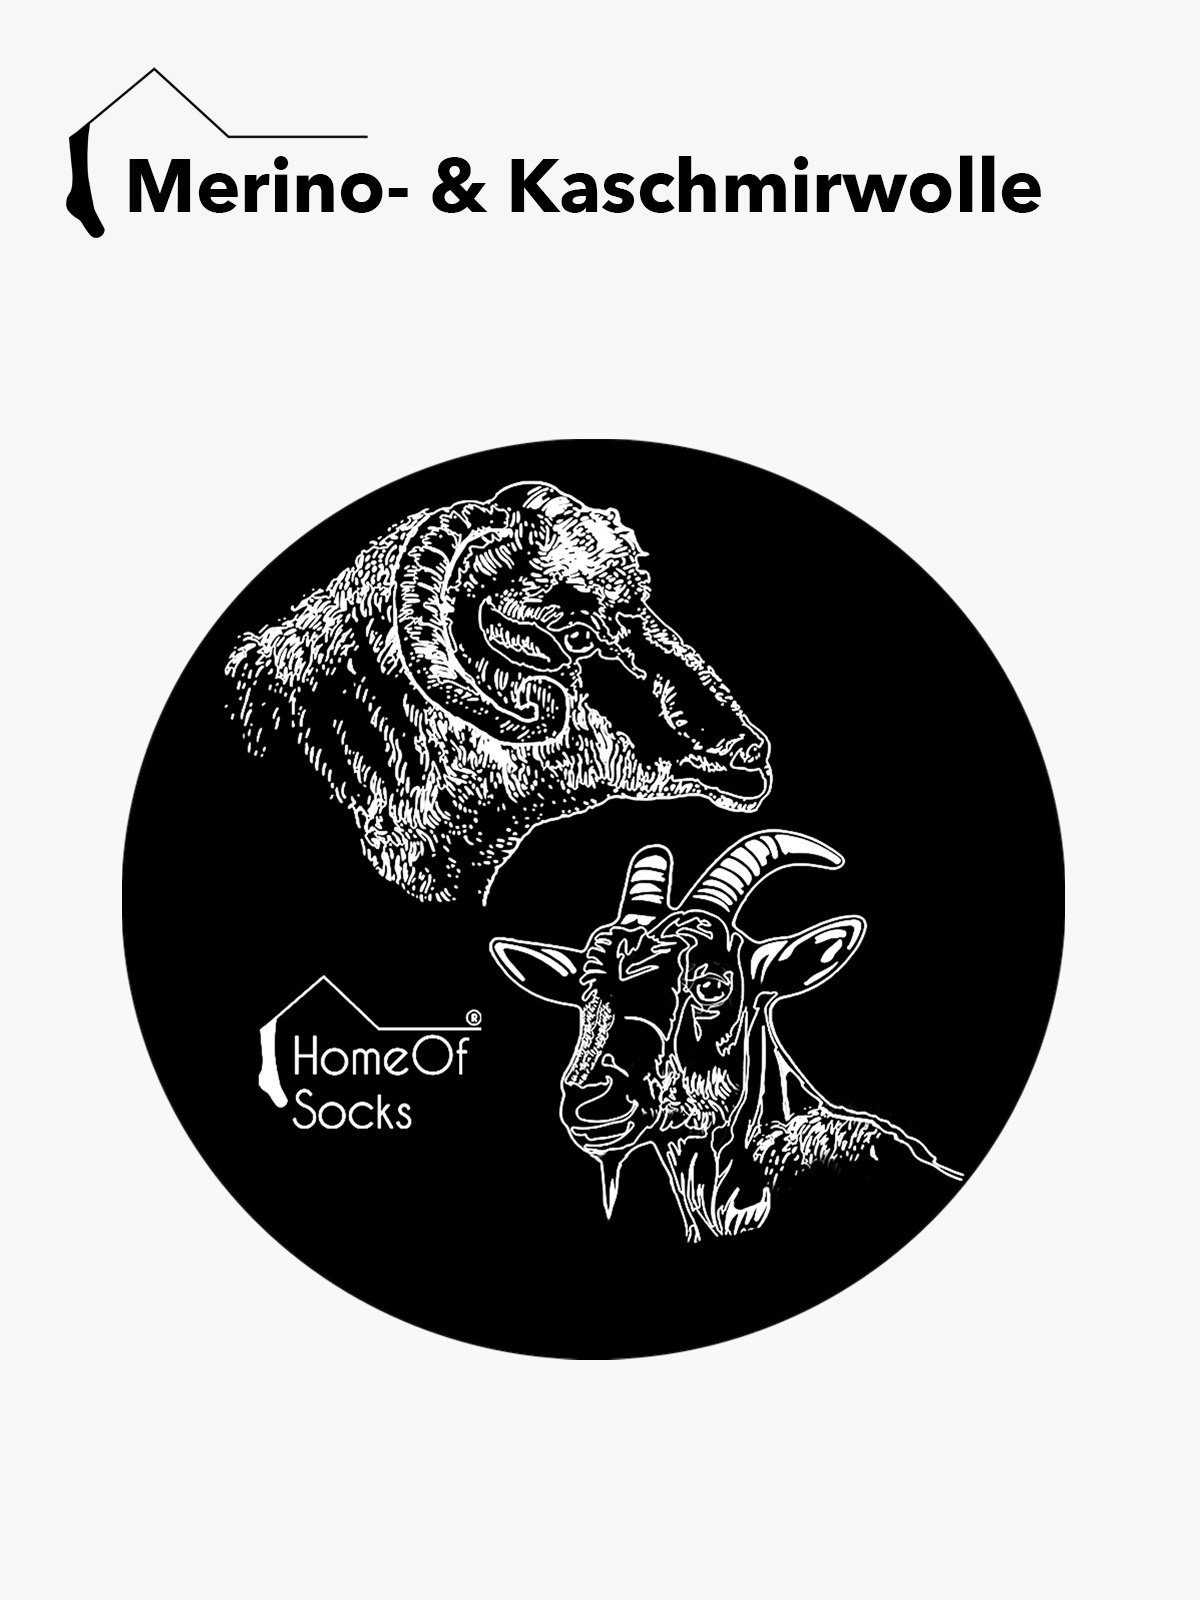 Merino- Kaschmir und HomeOfSocks Kniestrümpfe Merino Kashmirwolle Extra Kniestrumpf Luxuriöse mit Kniestrümpfe Wollsocken Weich Schwarz